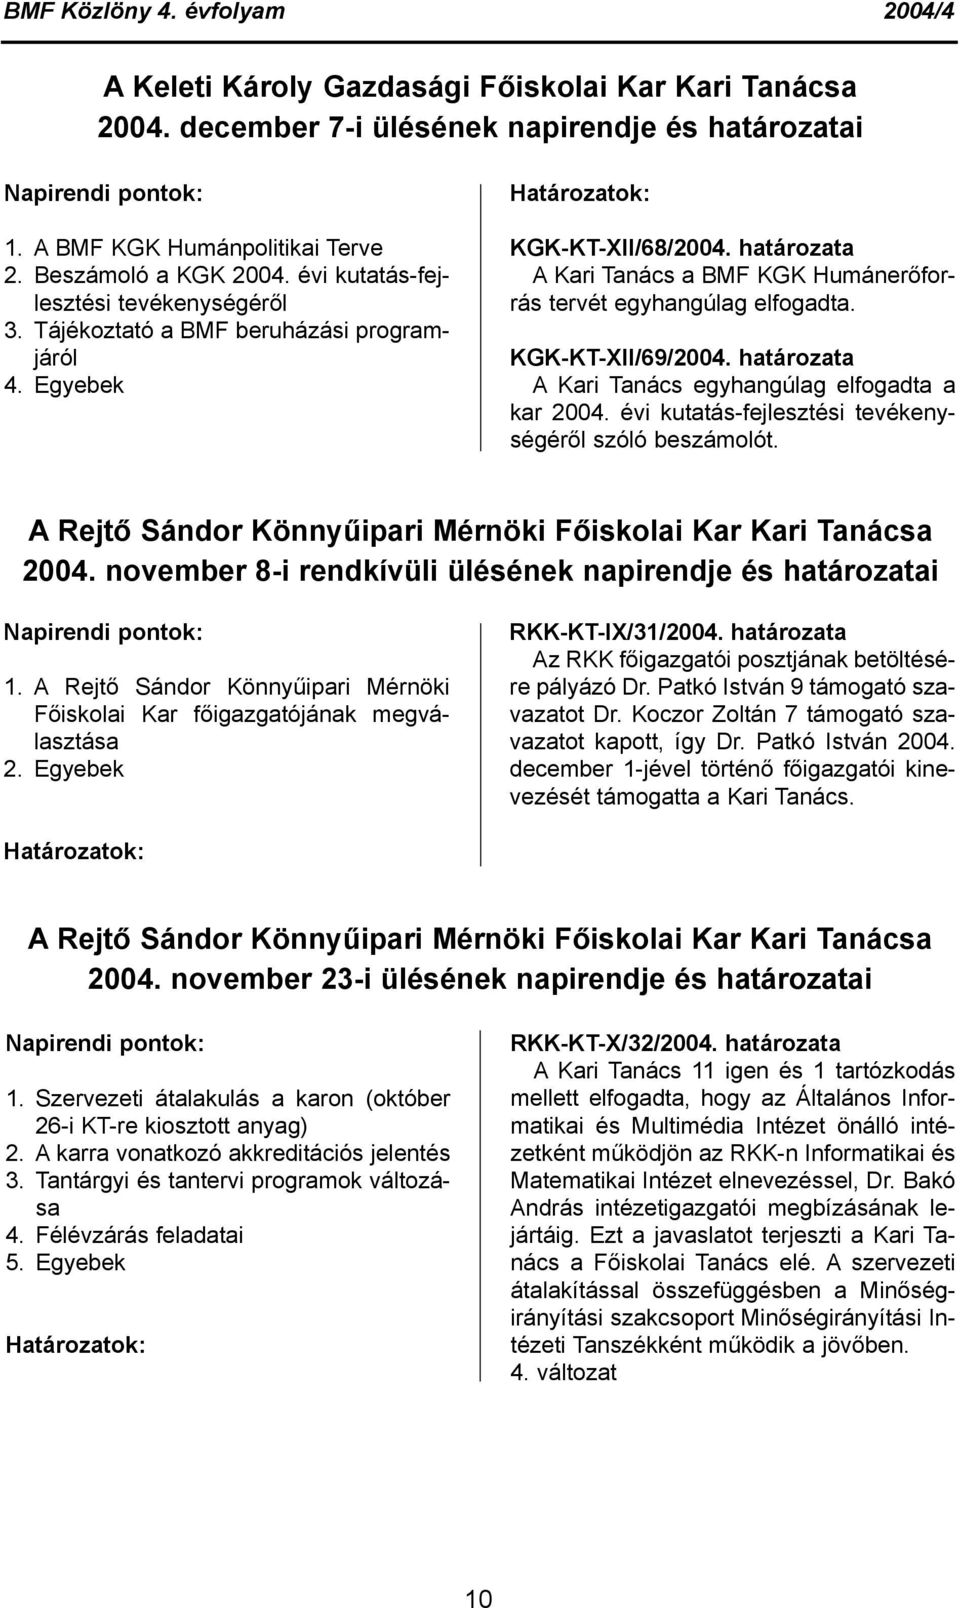 KGK-KT-XII/69/2004. határozata A Kari Tanács egyhangúlag elfogadta a kar 2004. évi kutatás-fejlesztési tevékenységéről szóló beszámolót.